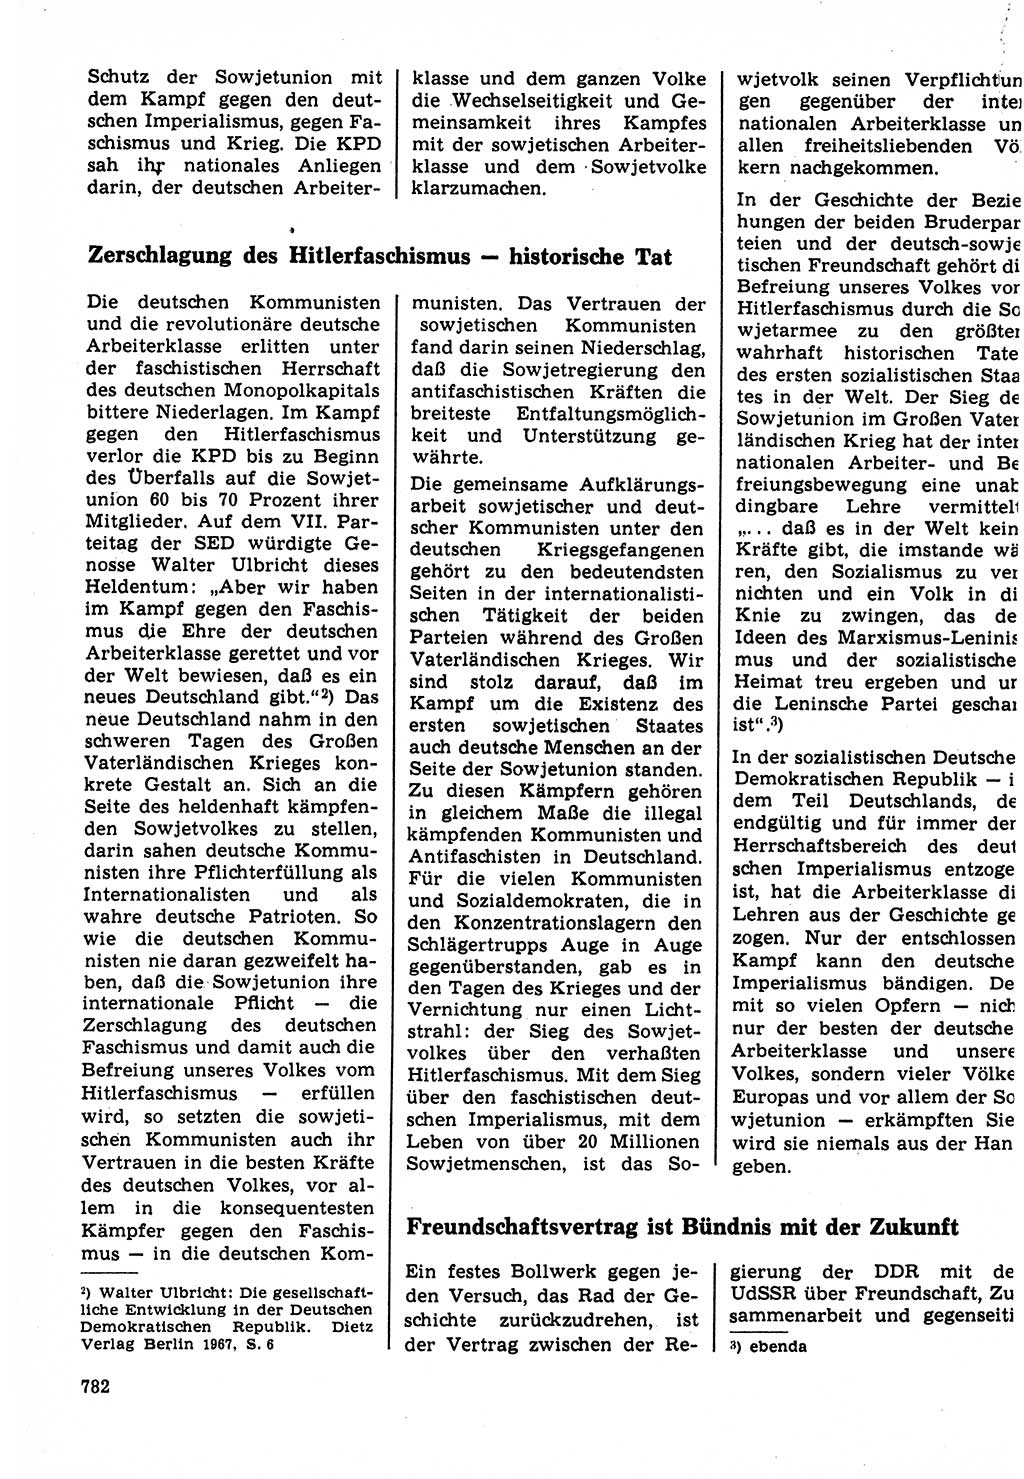 Neuer Weg (NW), Organ des Zentralkomitees (ZK) der SED (Sozialistische Einheitspartei Deutschlands) für Fragen des Parteilebens, 22. Jahrgang [Deutsche Demokratische Republik (DDR)] 1967, Seite 782 (NW ZK SED DDR 1967, S. 782)